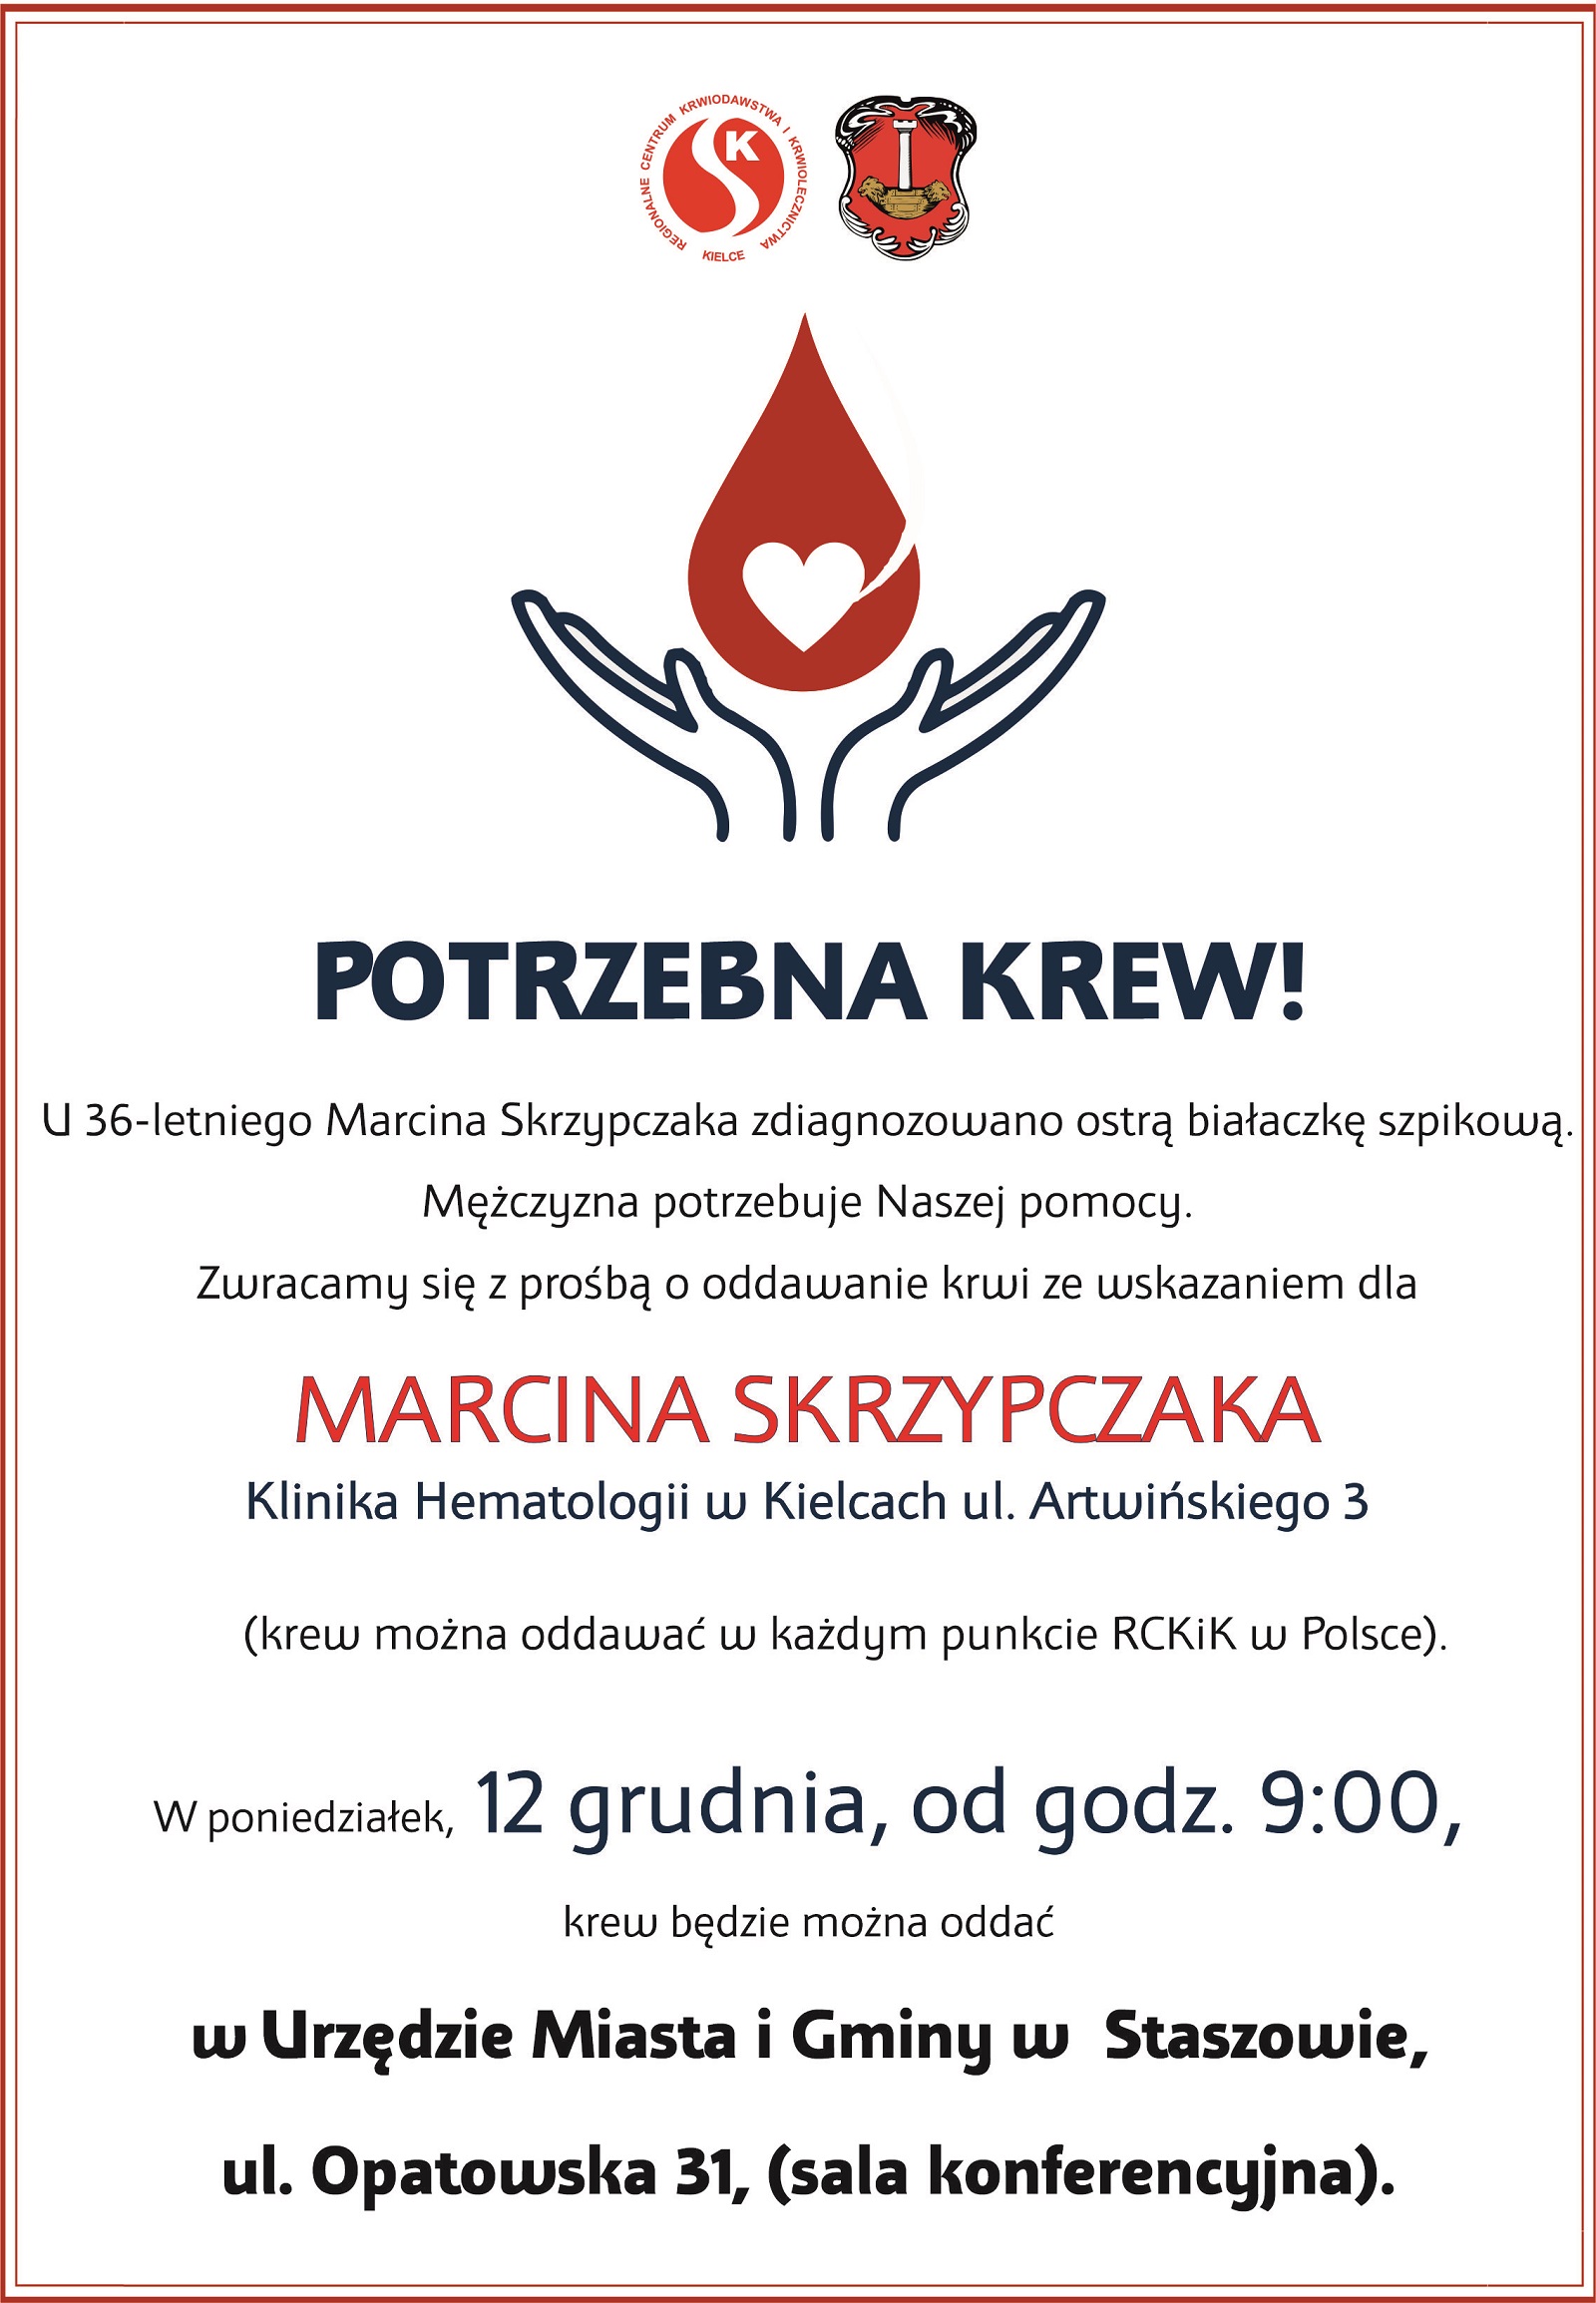 Zbiórka krwi dla Marcina Skrzypczaka